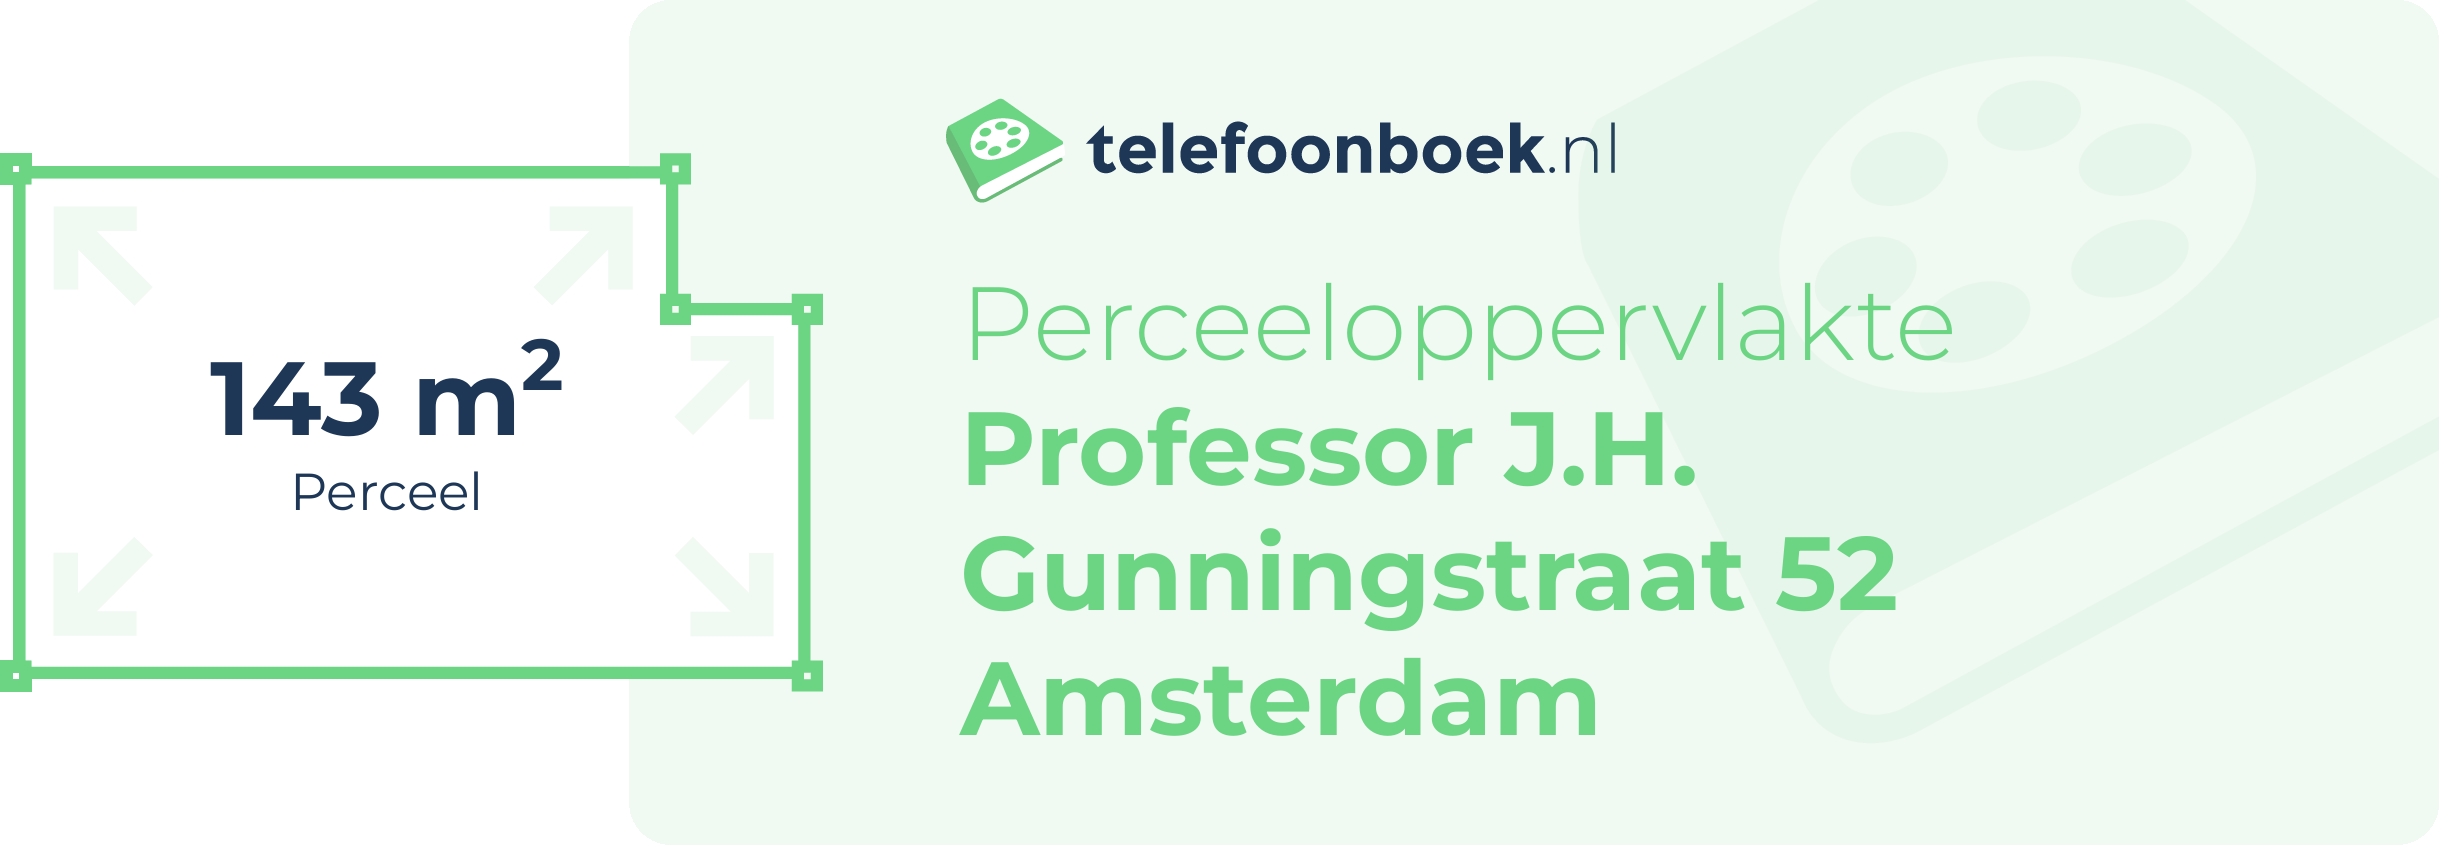 Perceeloppervlakte Professor J.H. Gunningstraat 52 Amsterdam